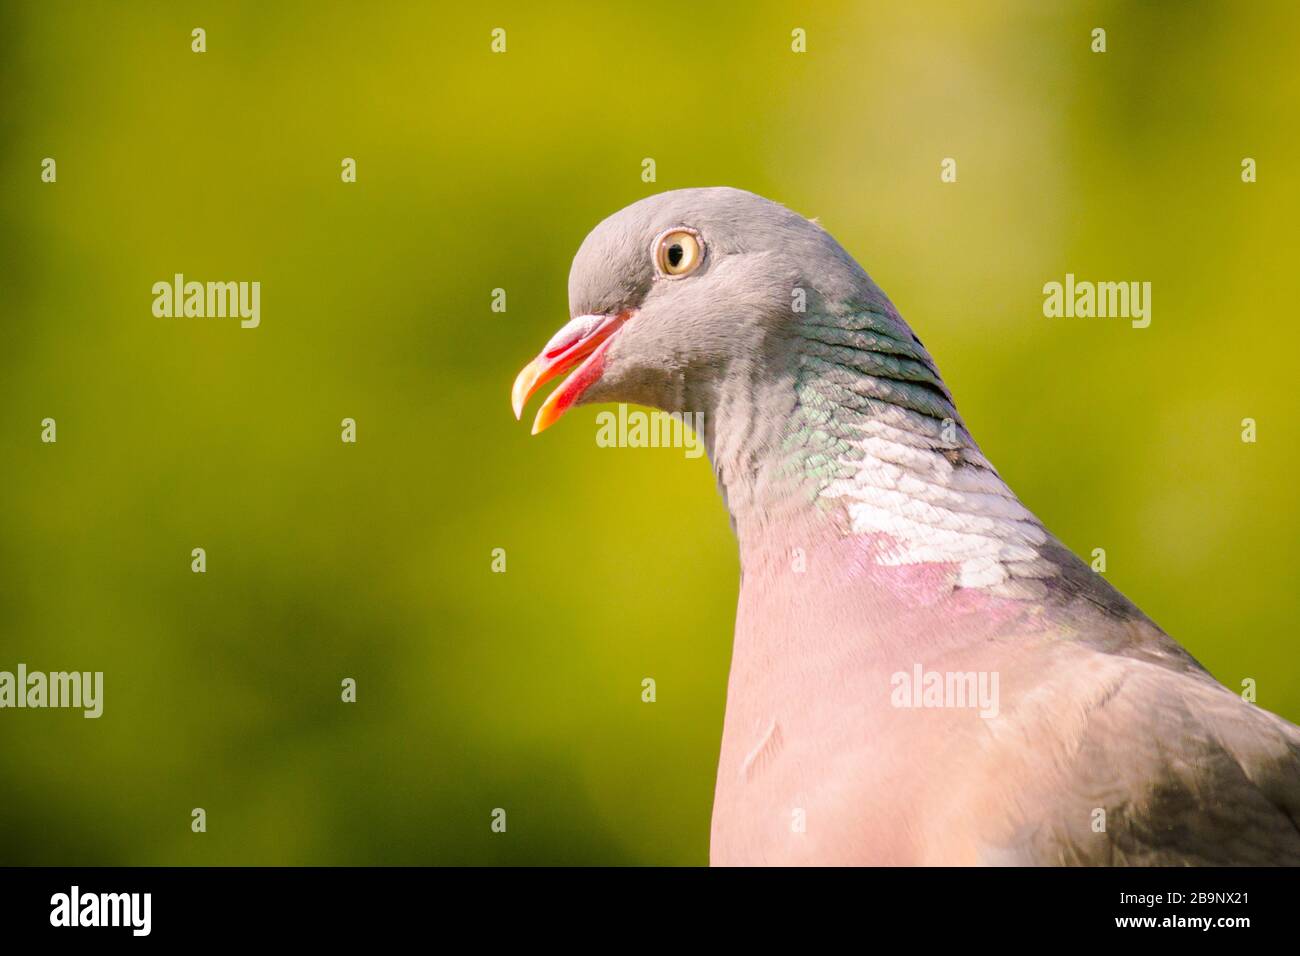 Pigeon en bois commun (Columba palumbus), en profil, beak ouvert, fond vert. Tour de cou blanc distinctif, sein rose et plumes vertes irisées. Banque D'Images